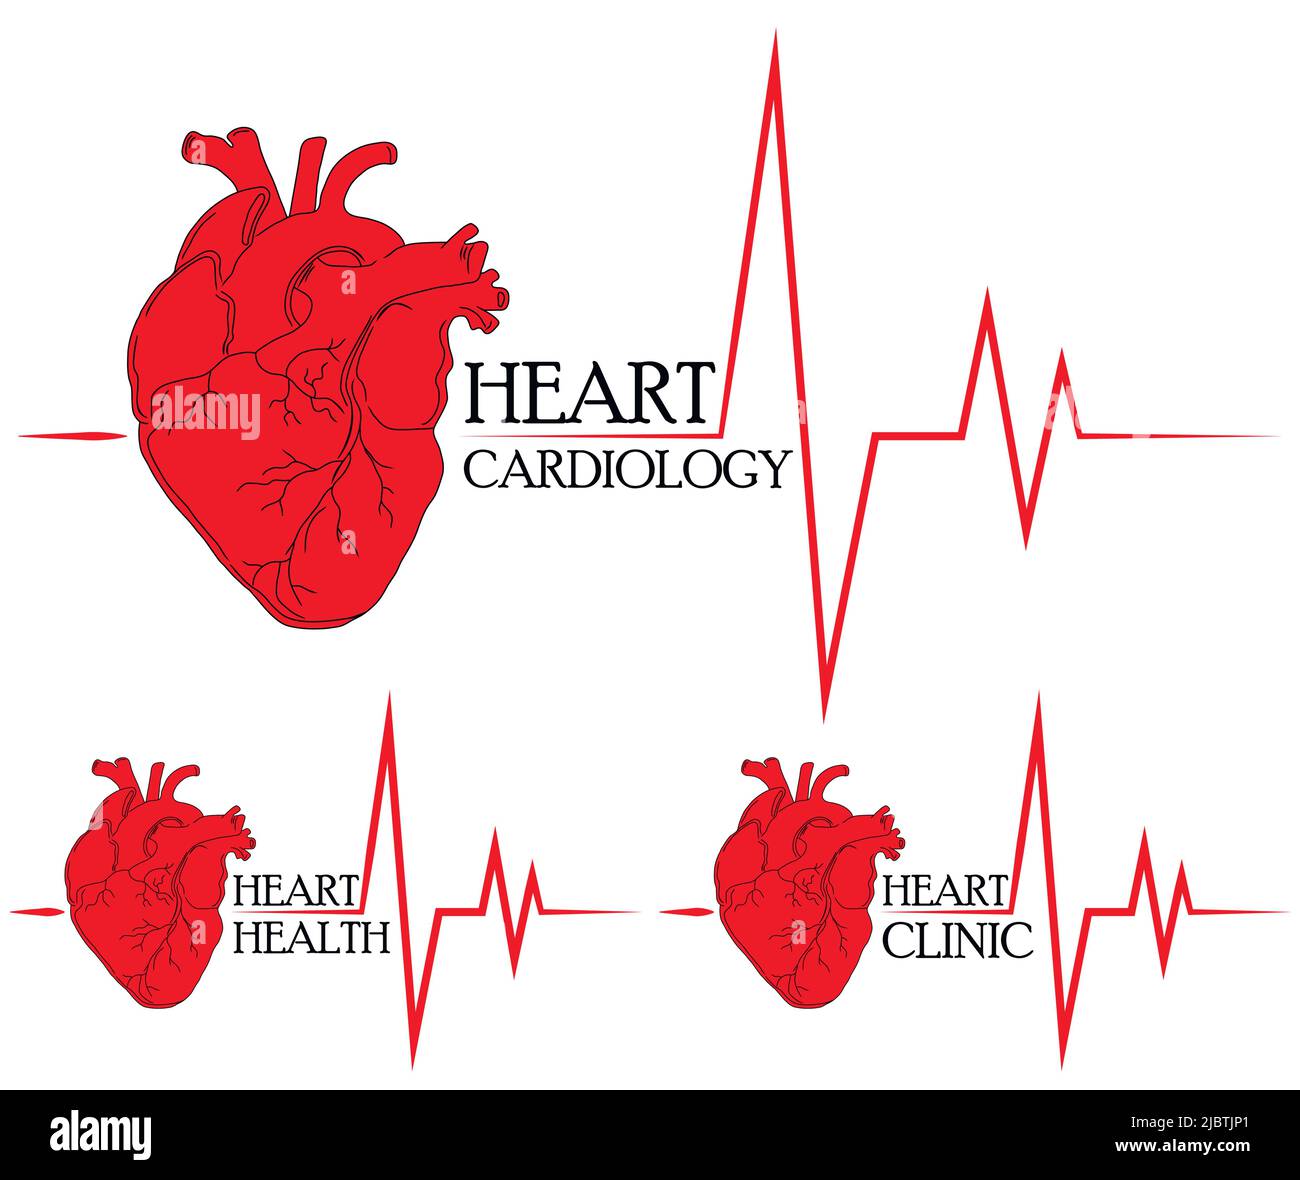 Anatomische Zeichnung des Herzens. Hintergrund für Broschüren, Broschüren, Flyer. Set von roten Herzen Symbole für Herz-Klinik und Herz-Gesundheitszentrum. Stock Vektor